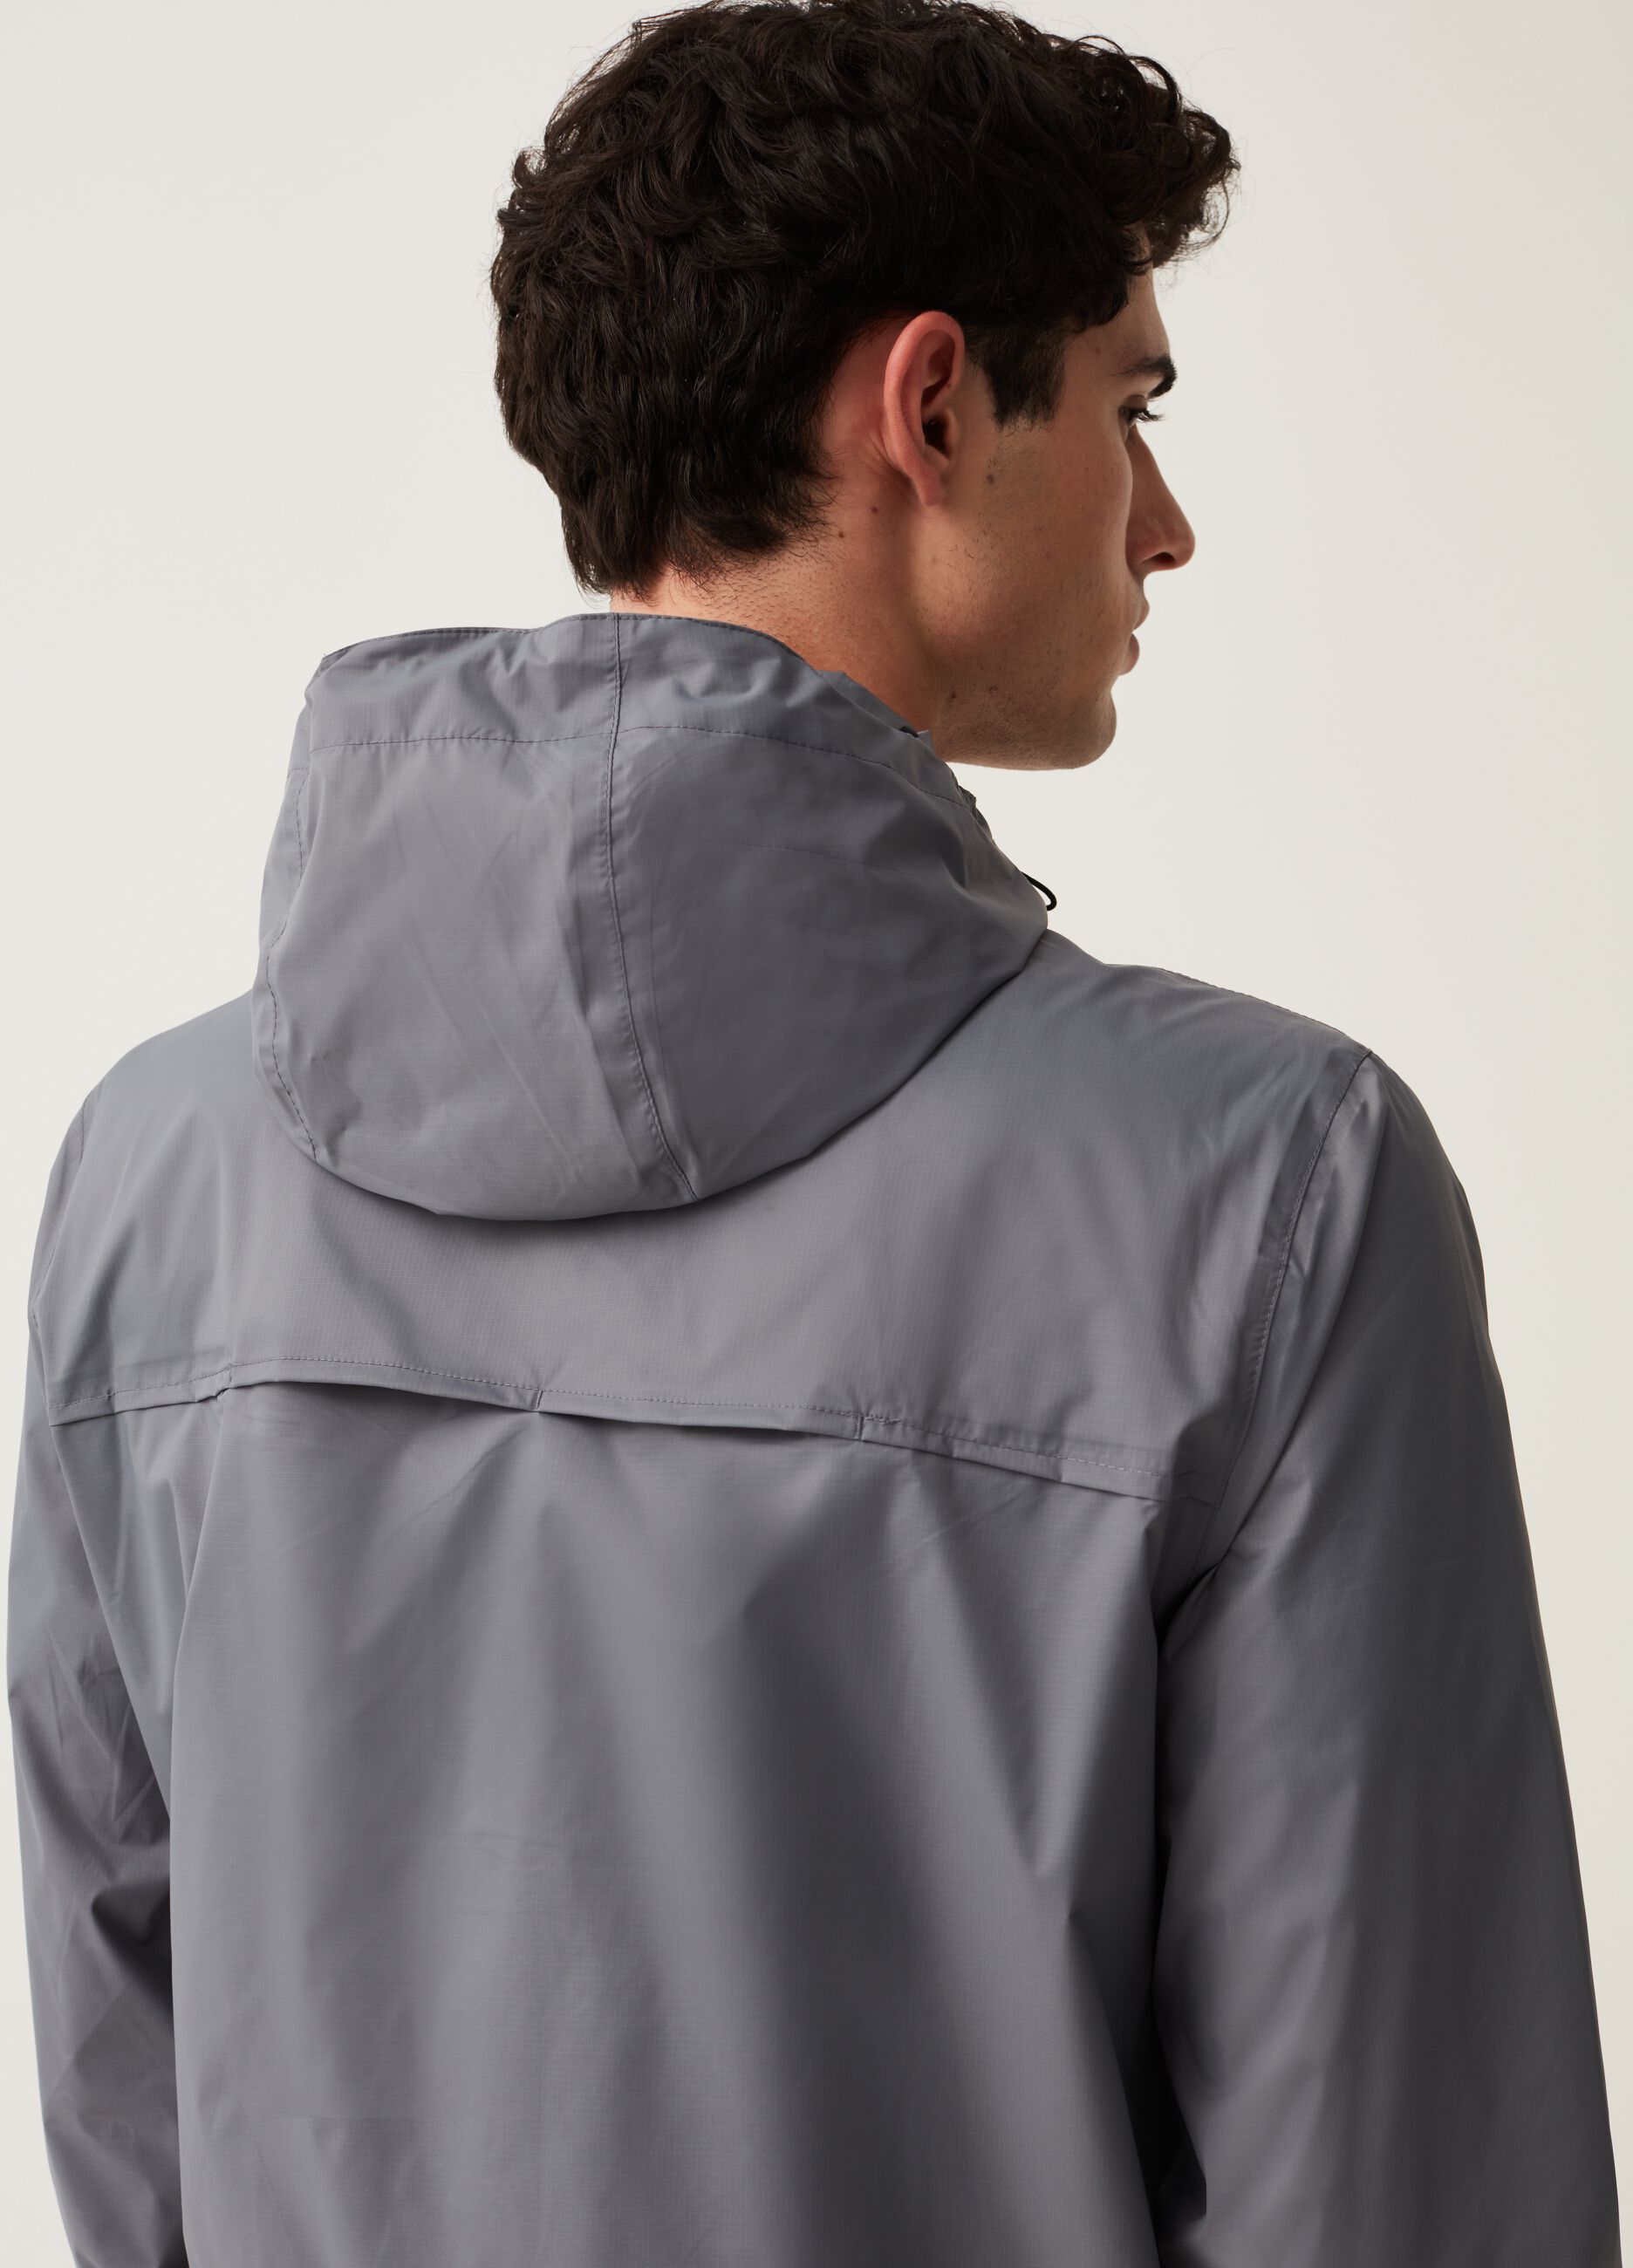 Short waterproof jacket with hood